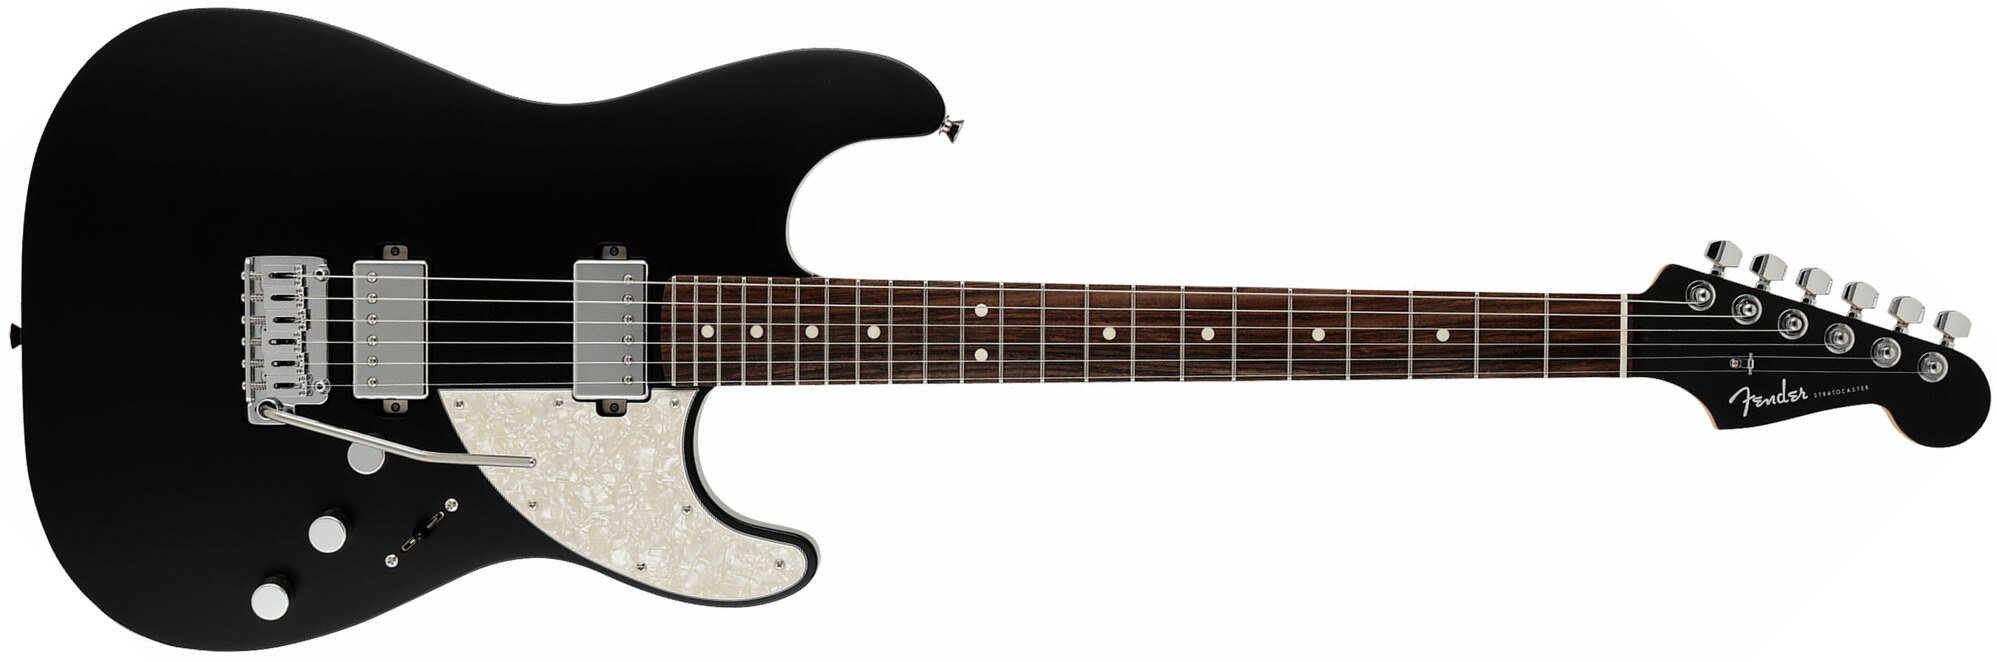 Fender Strat Elemental Mij Jap 2h Trem Rw - Stone Black - Elektrische gitaar in Str-vorm - Main picture